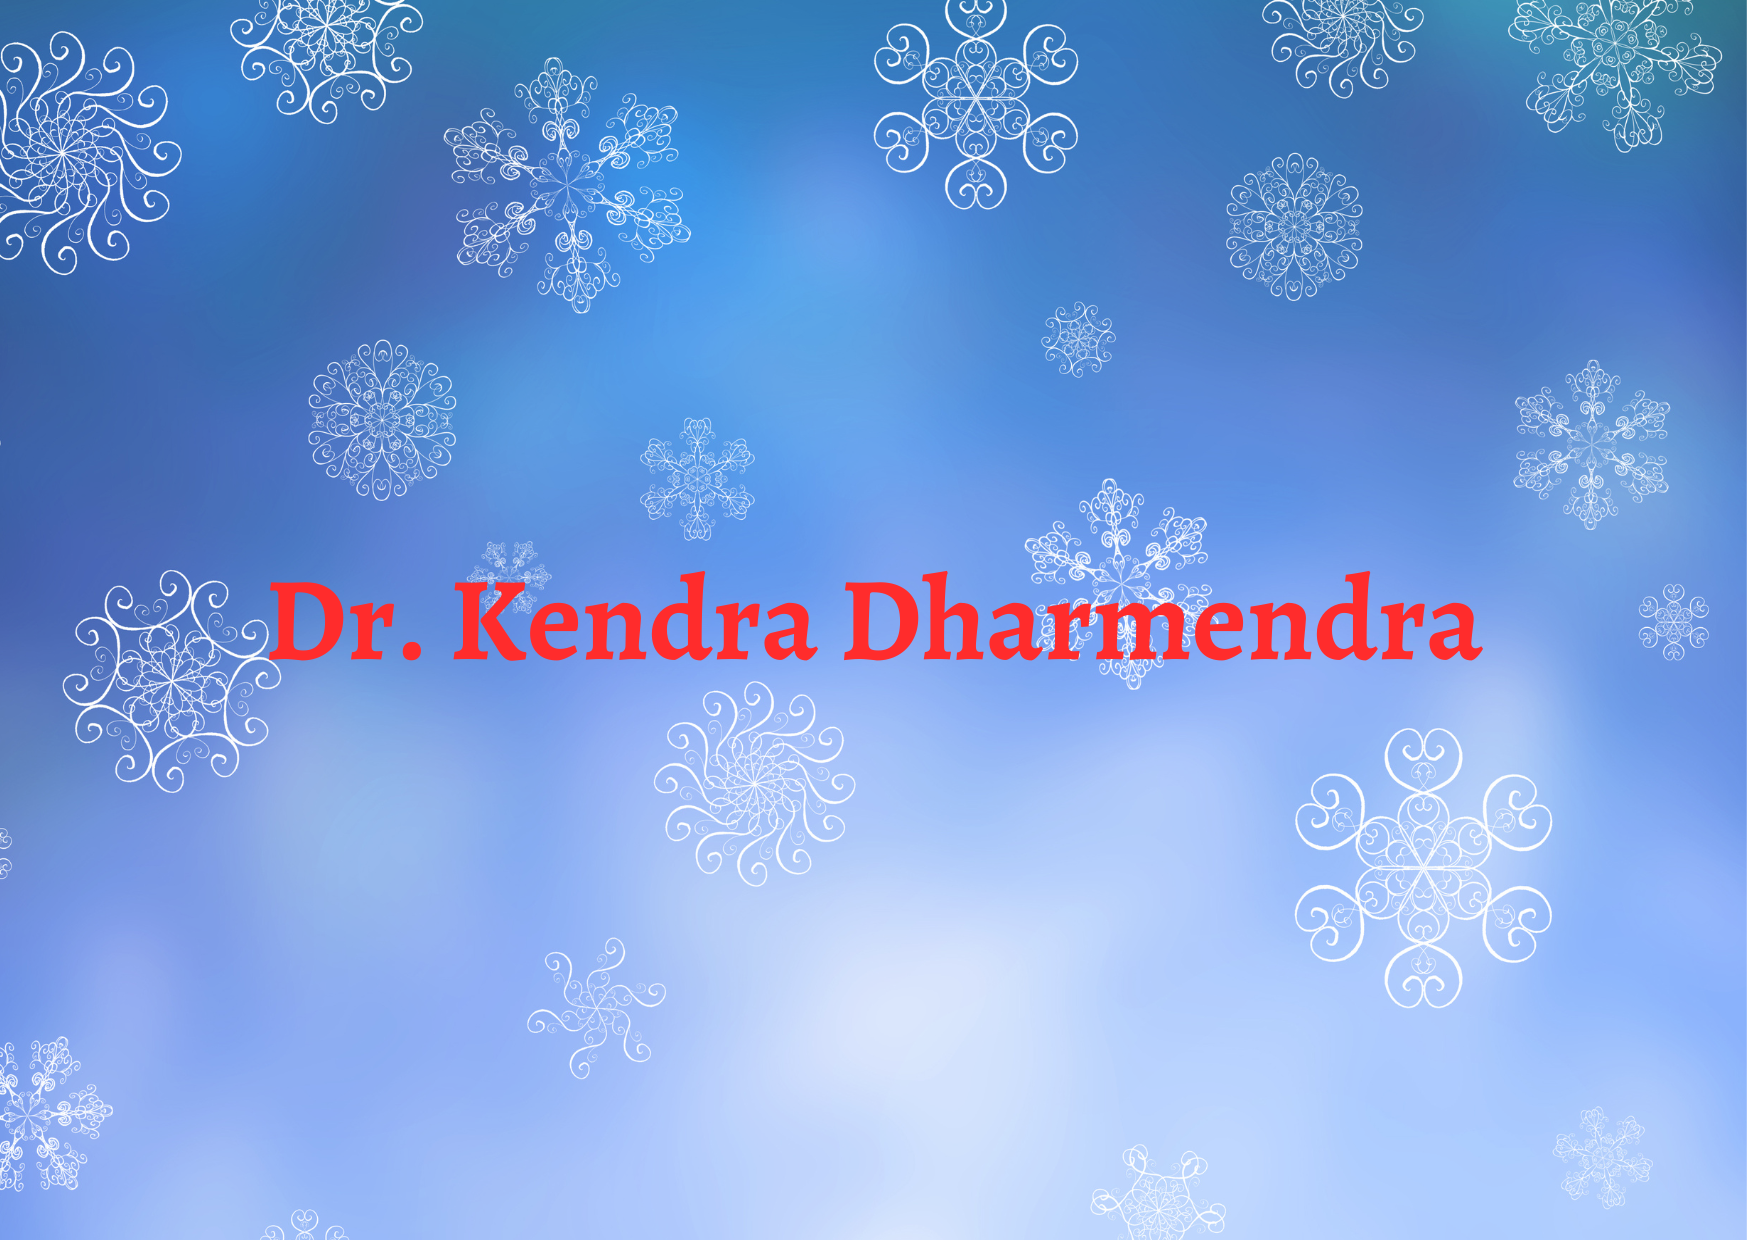 Dr. Kendra Dharmendra,   